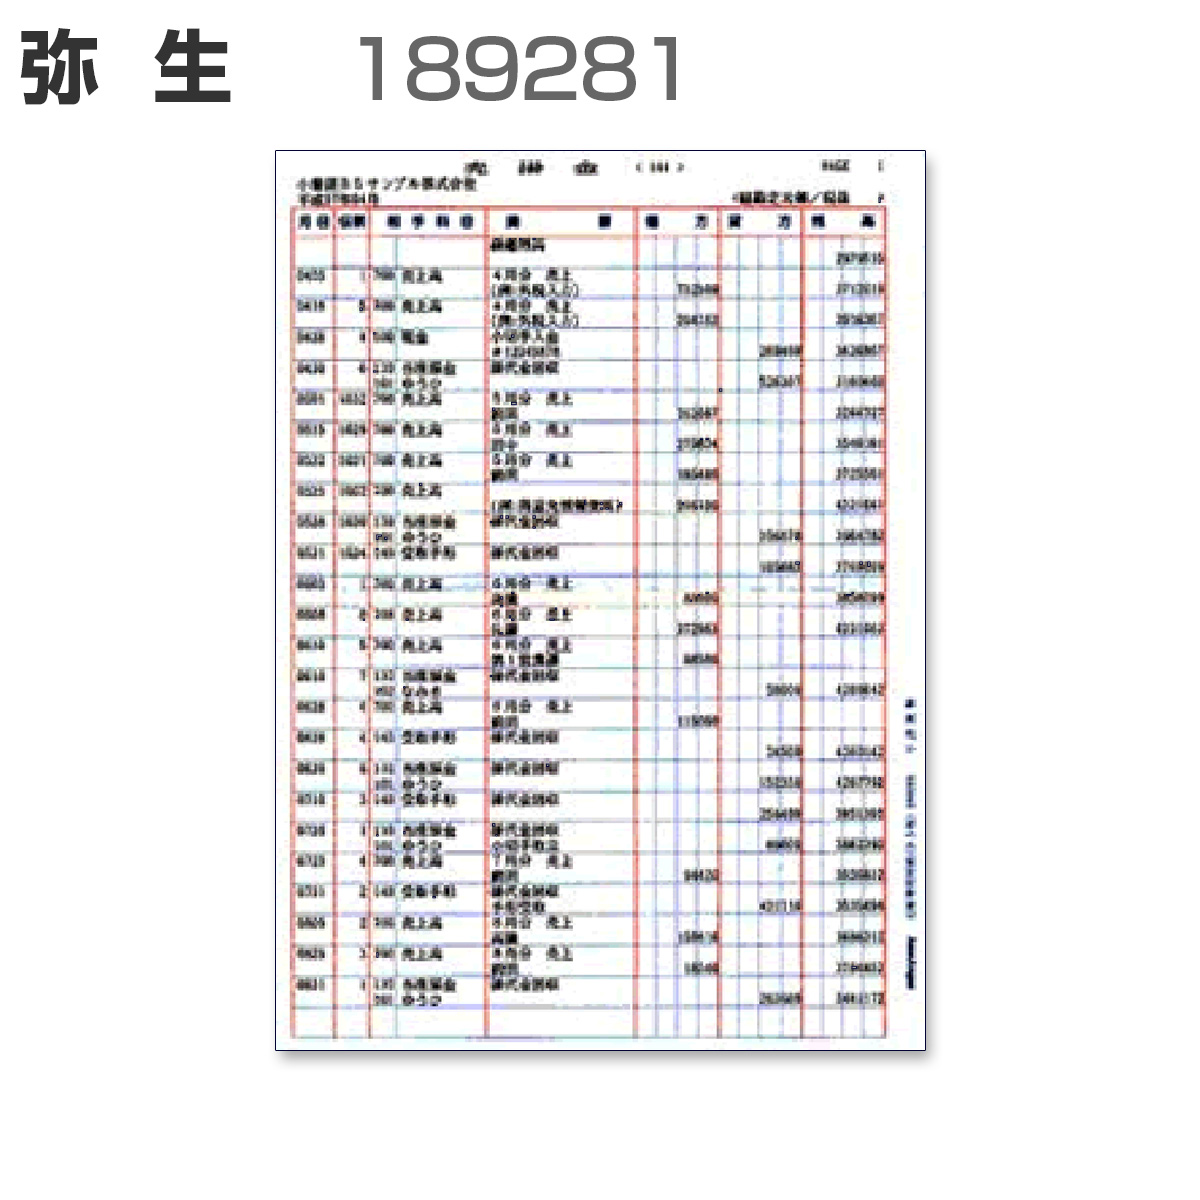 弥生 189281 B5元帳連続用紙 (1,000枚)